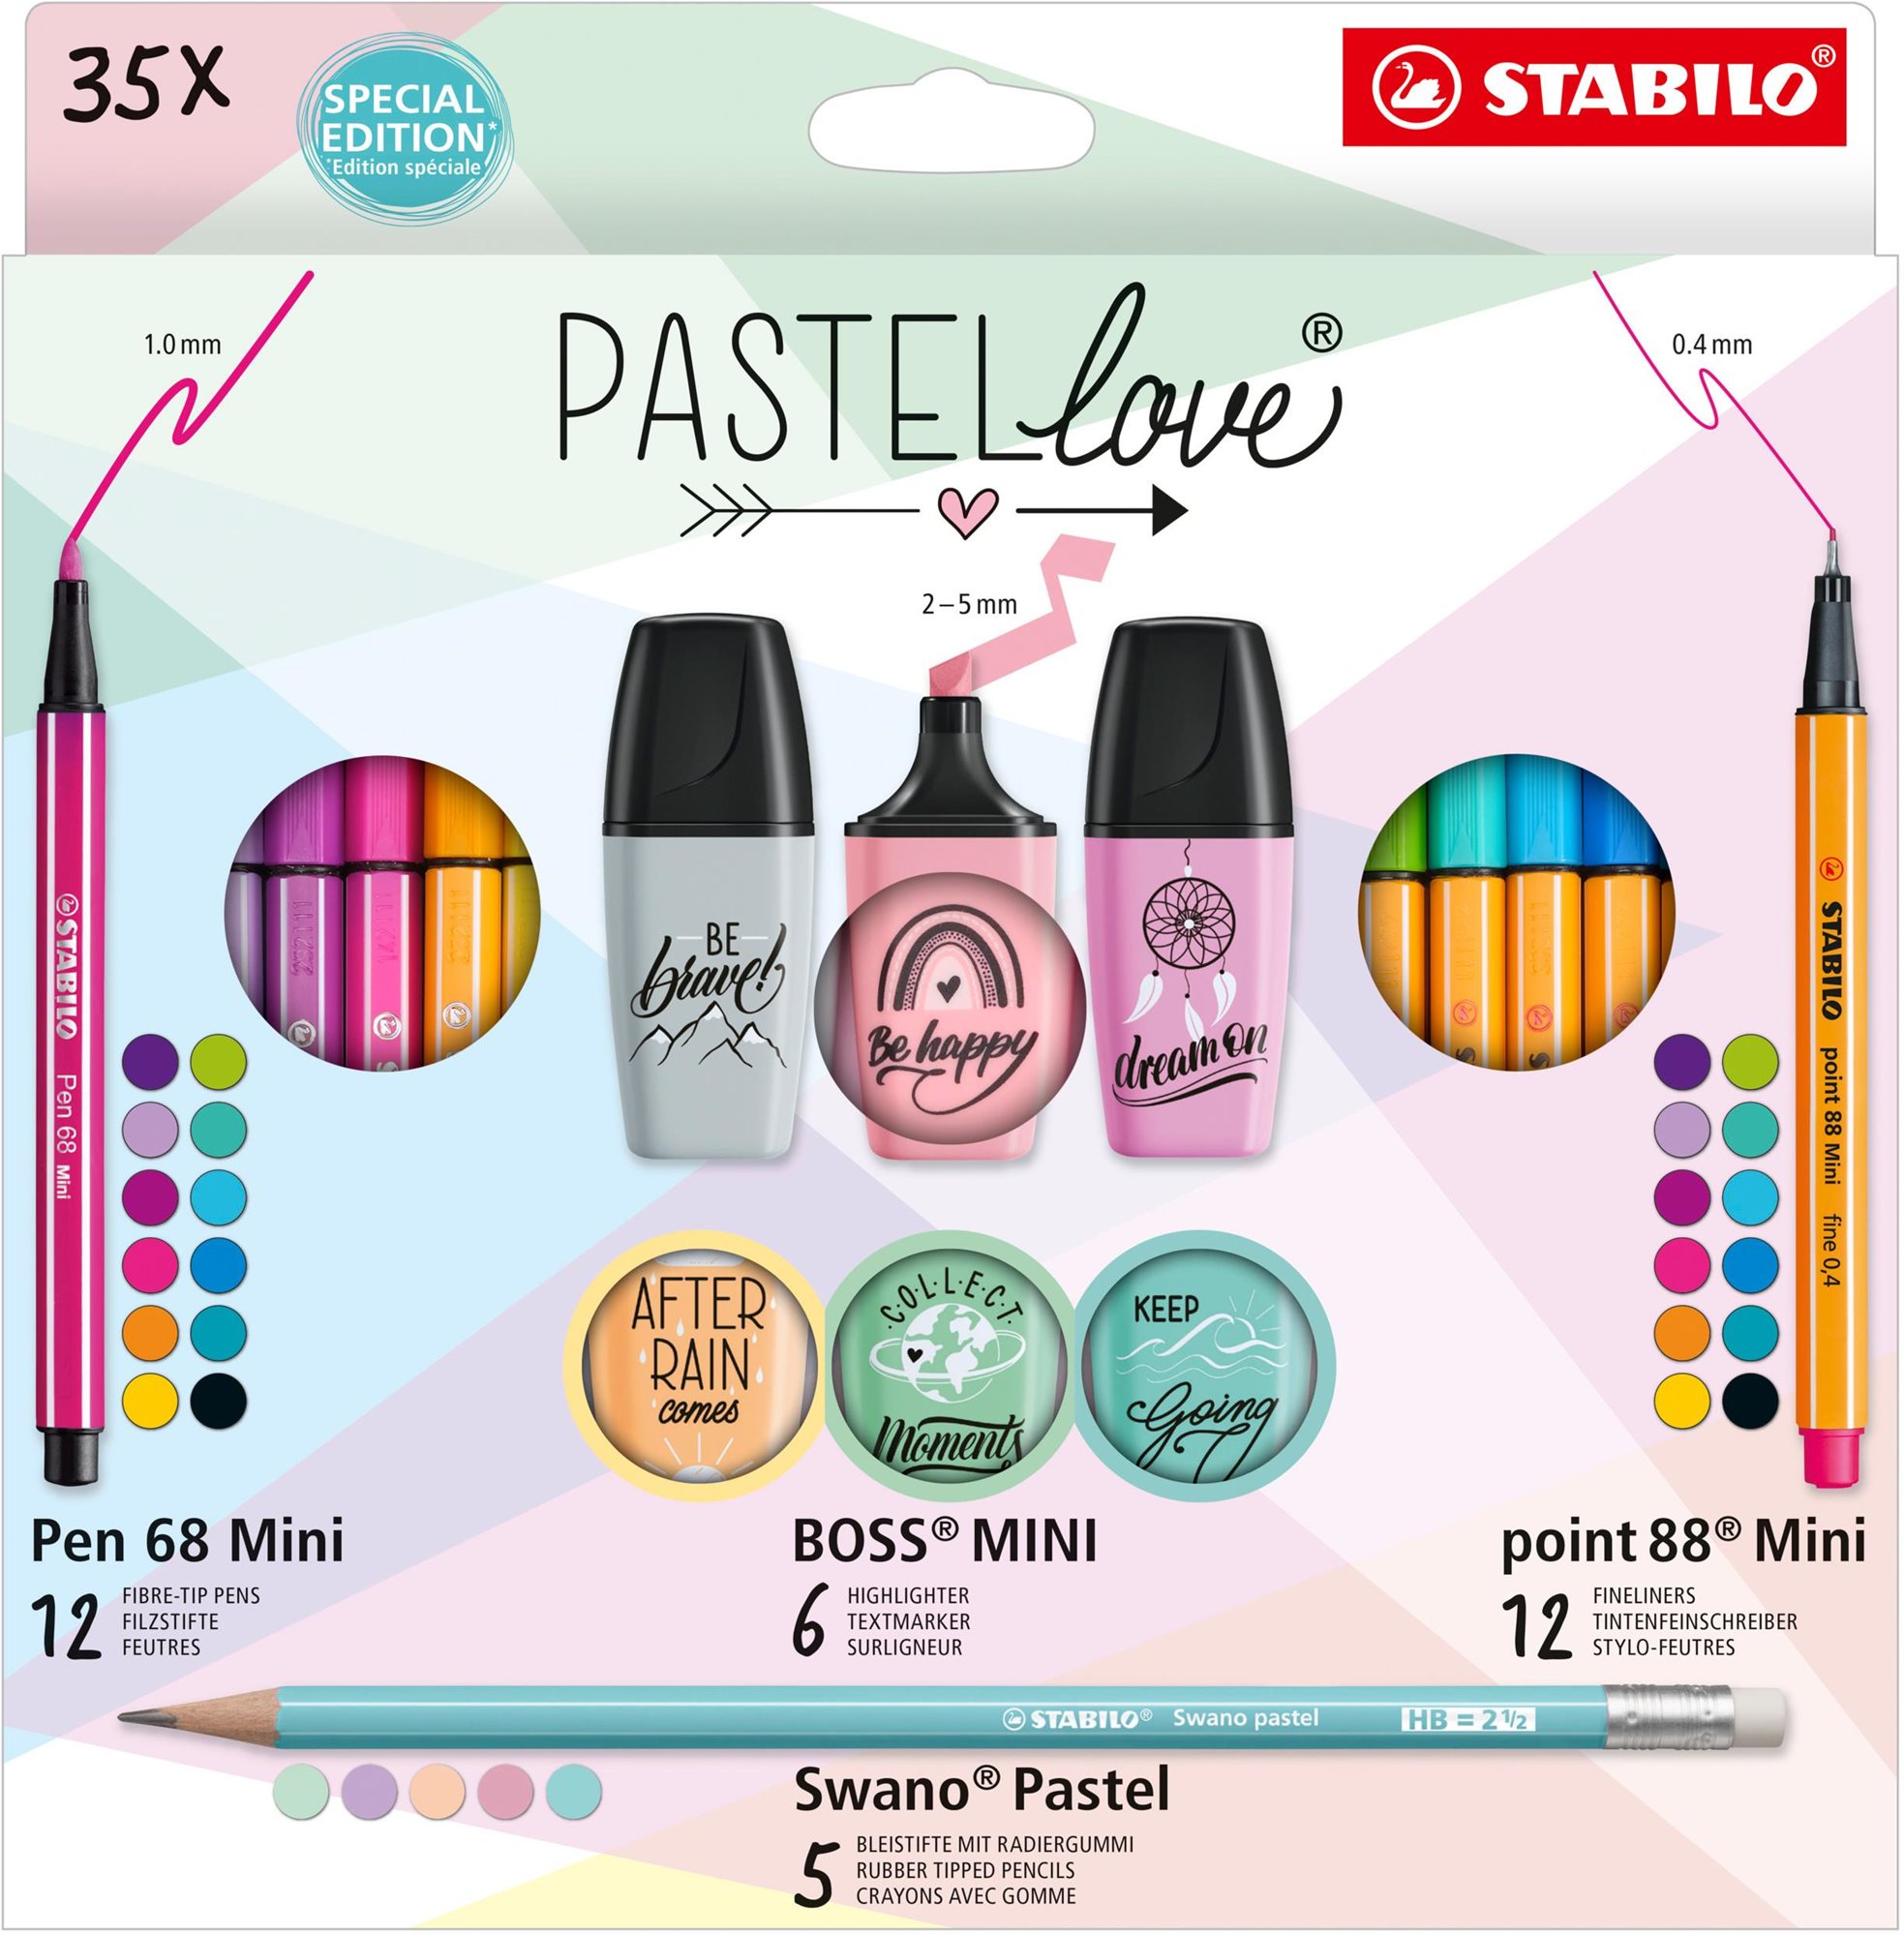 STABILO Pastellove - 35 db - tűfilc, prémium szálas filctoll, szövegkiemelő és grafitceruza